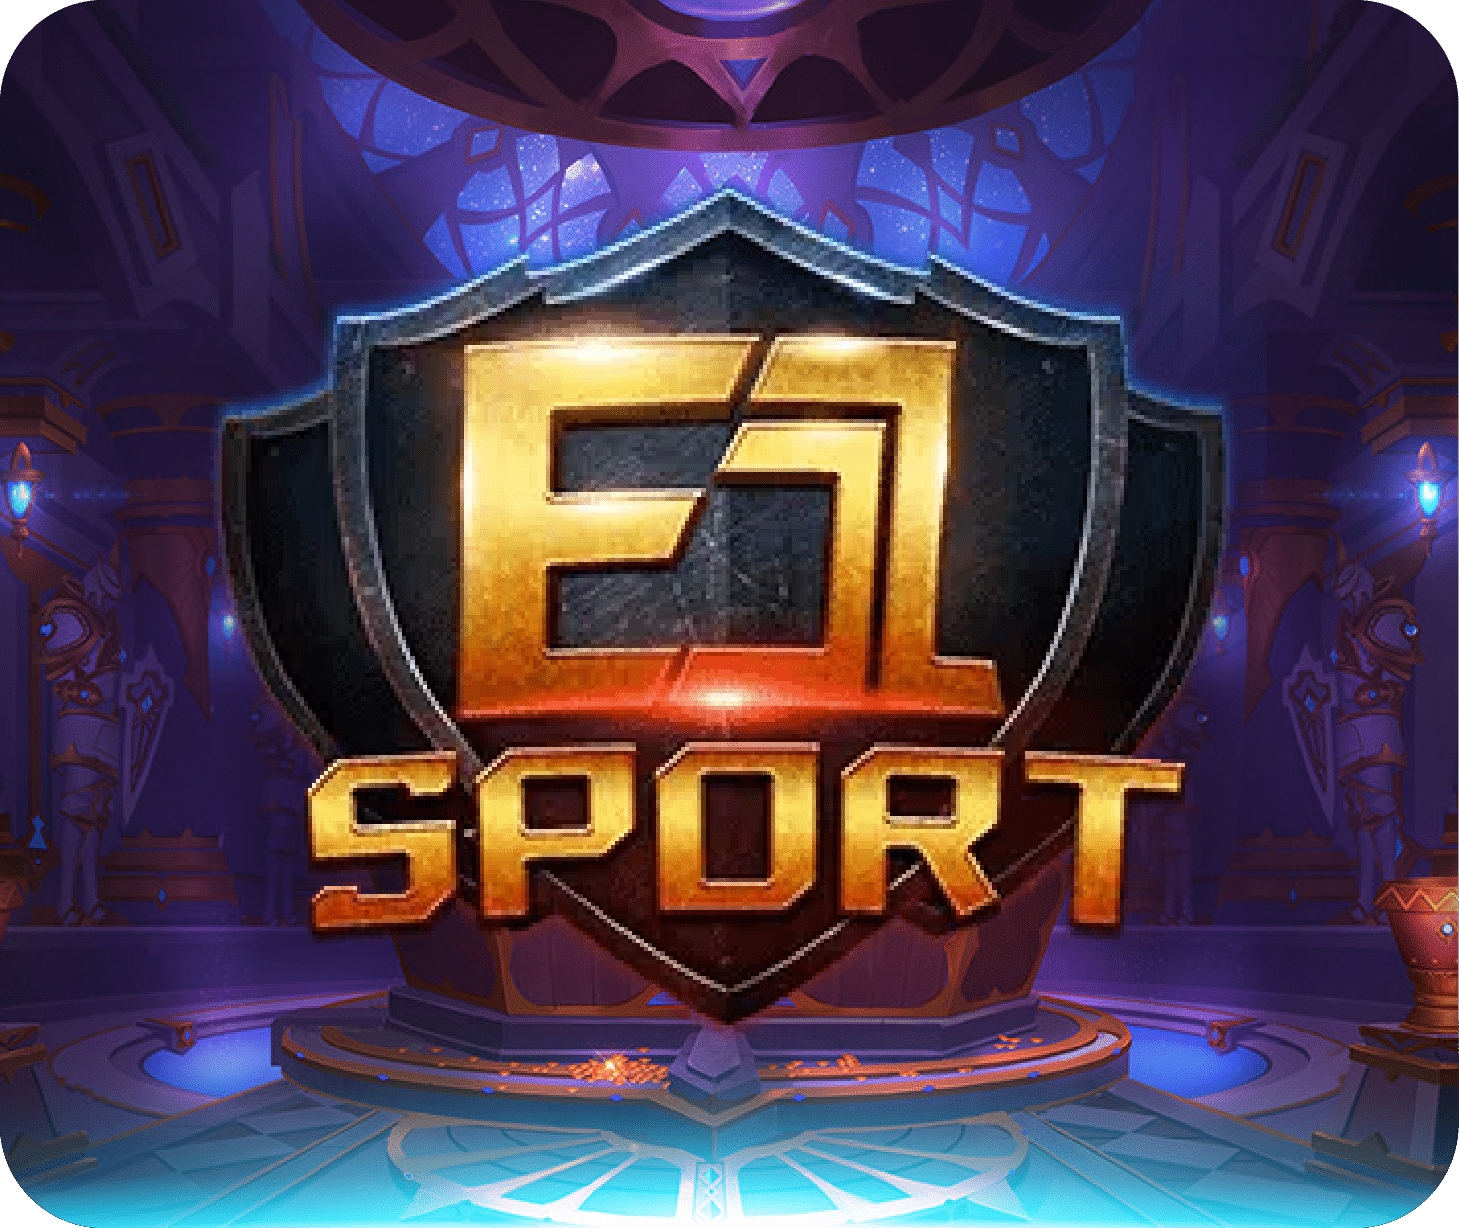 E1Sport